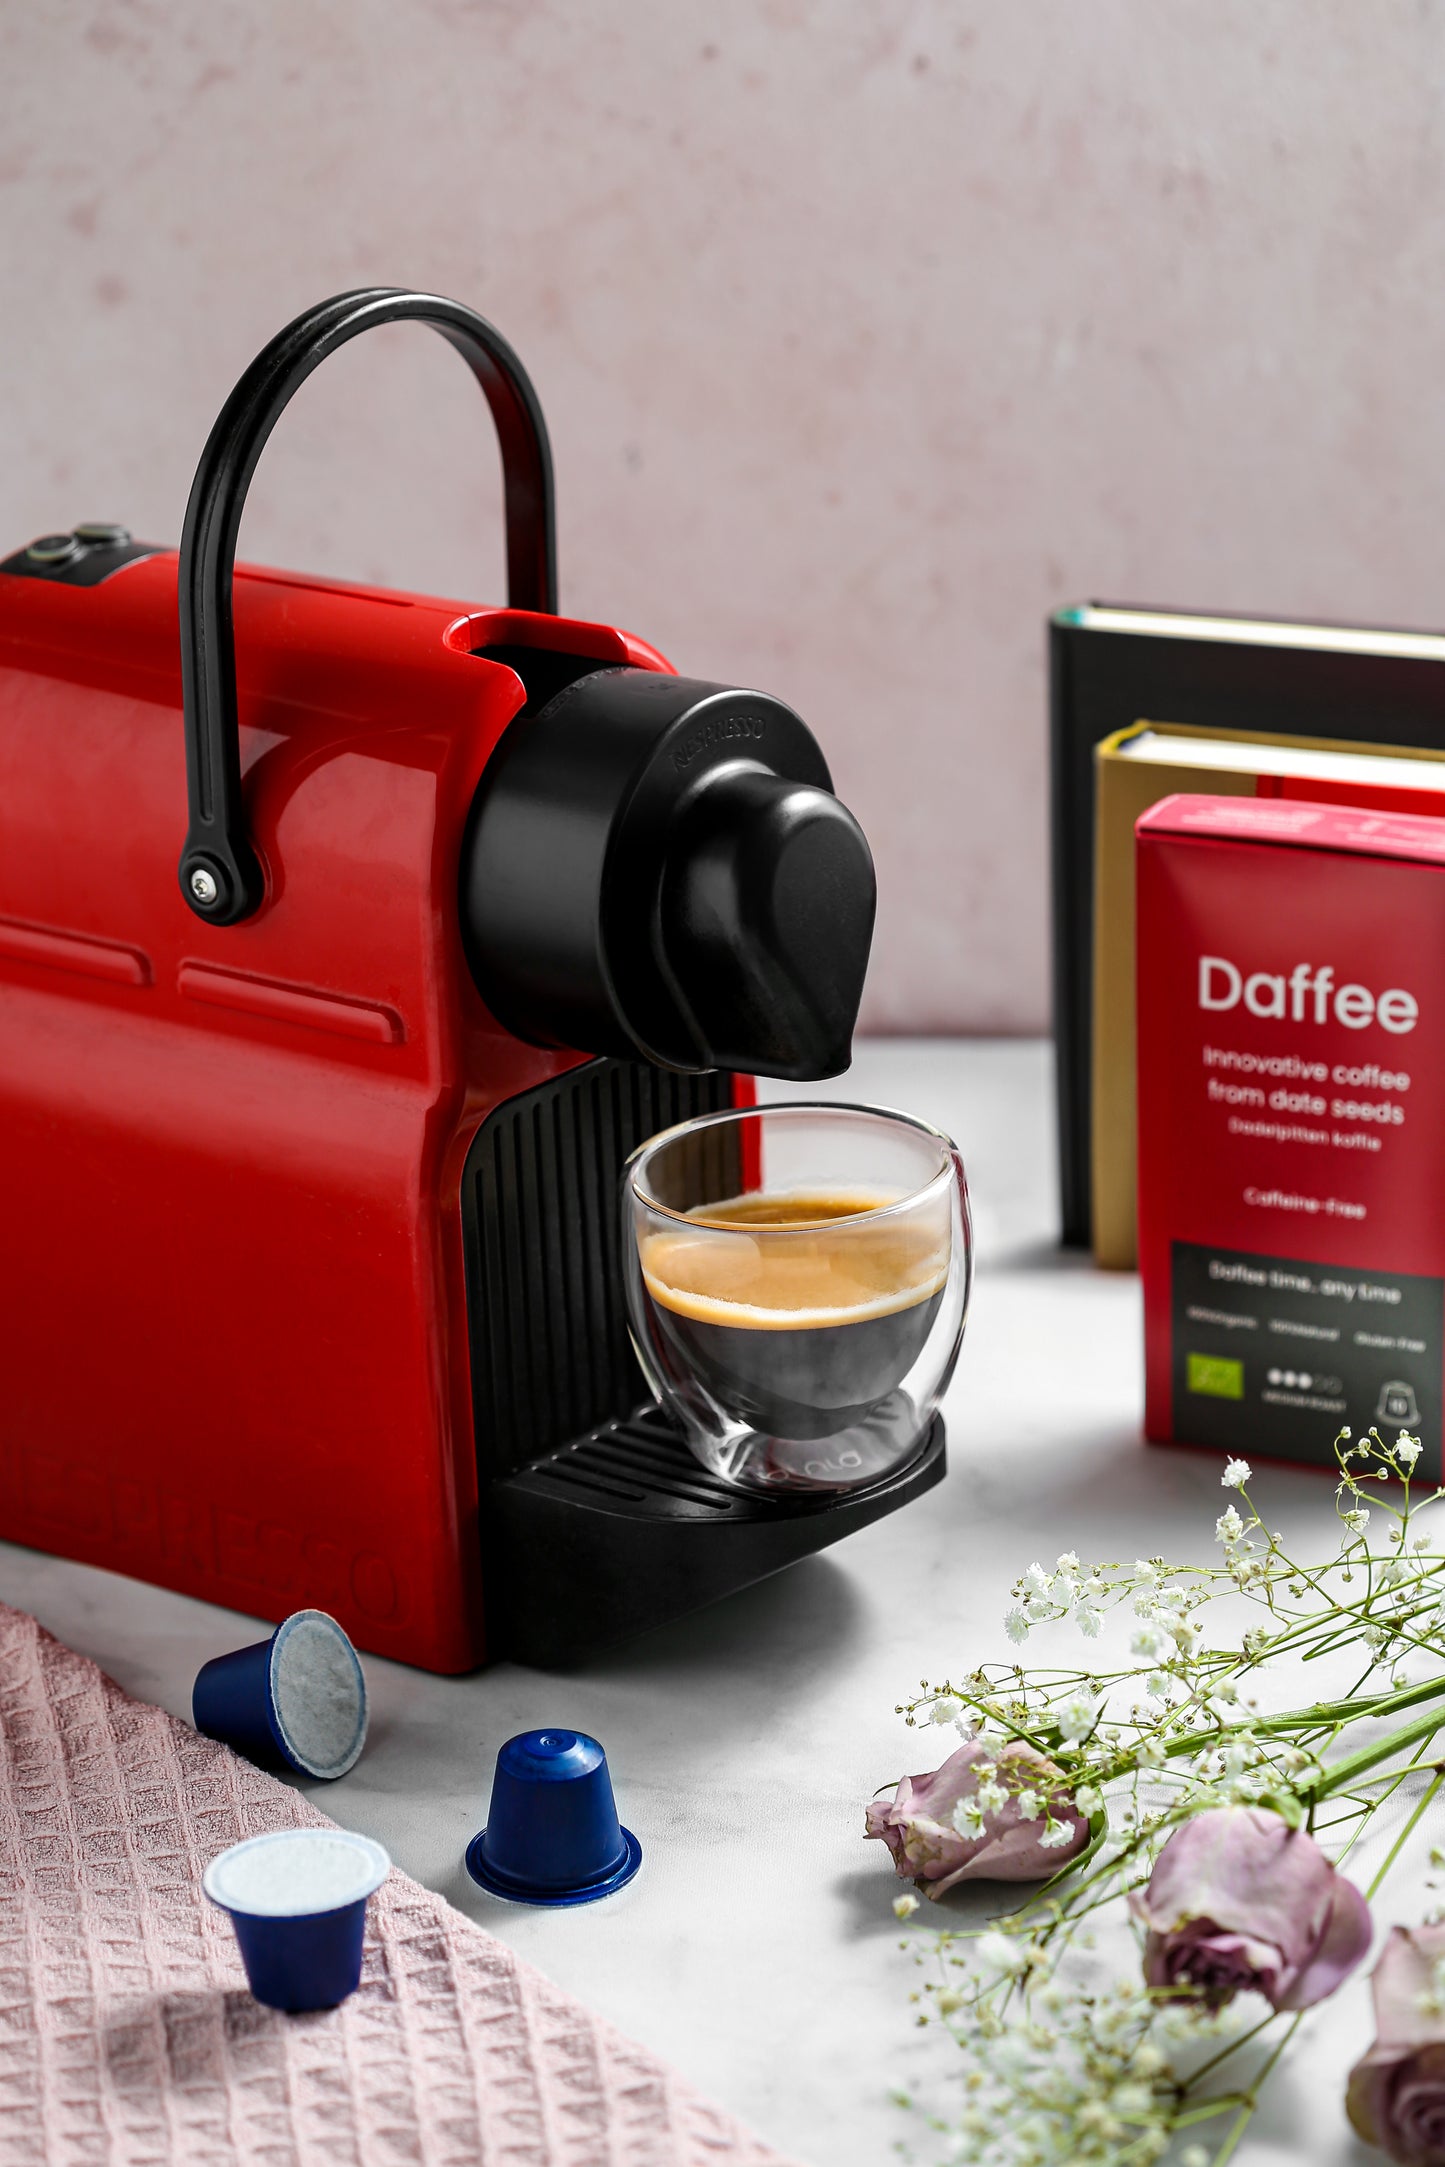 Rode koffiemachine maakt Daffee, een duurzame, cafeïnevrije koffiealternatief uit geüpcyclede dadelbonen, met bloemen en verpakking in beeld